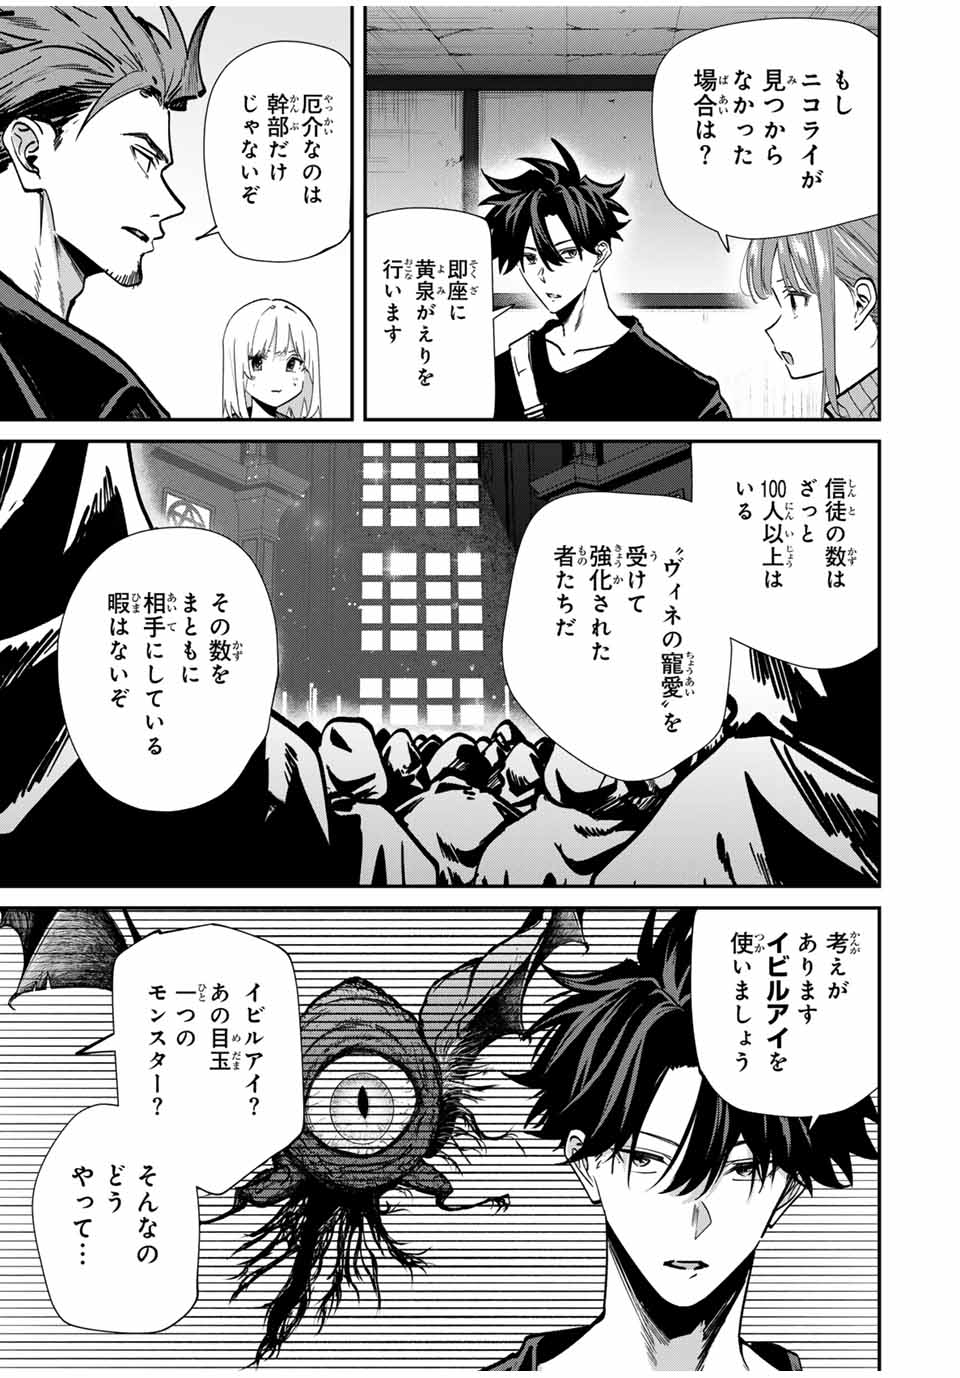 Kono Sekai ga Izure Horobu Koto wo, Ore dake ga Shitte Iru - Chapter 81 - Page 3